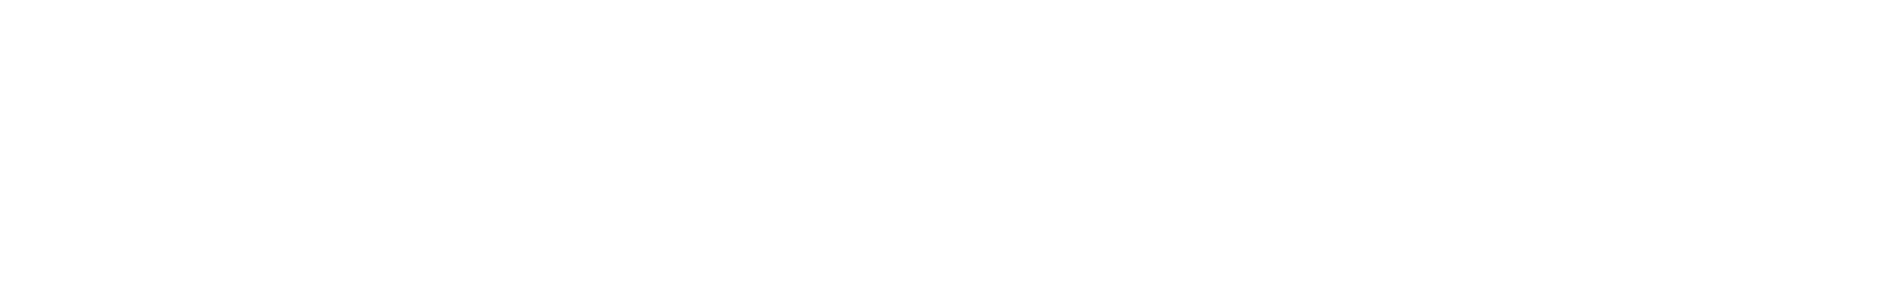 عثمان جاني stylish signature style. Best Handwritten Sign (Allison_Script) for my name. Handwritten Signature Collection Ideas for my name عثمان جاني. عثمان جاني signature style 2 images and pictures png